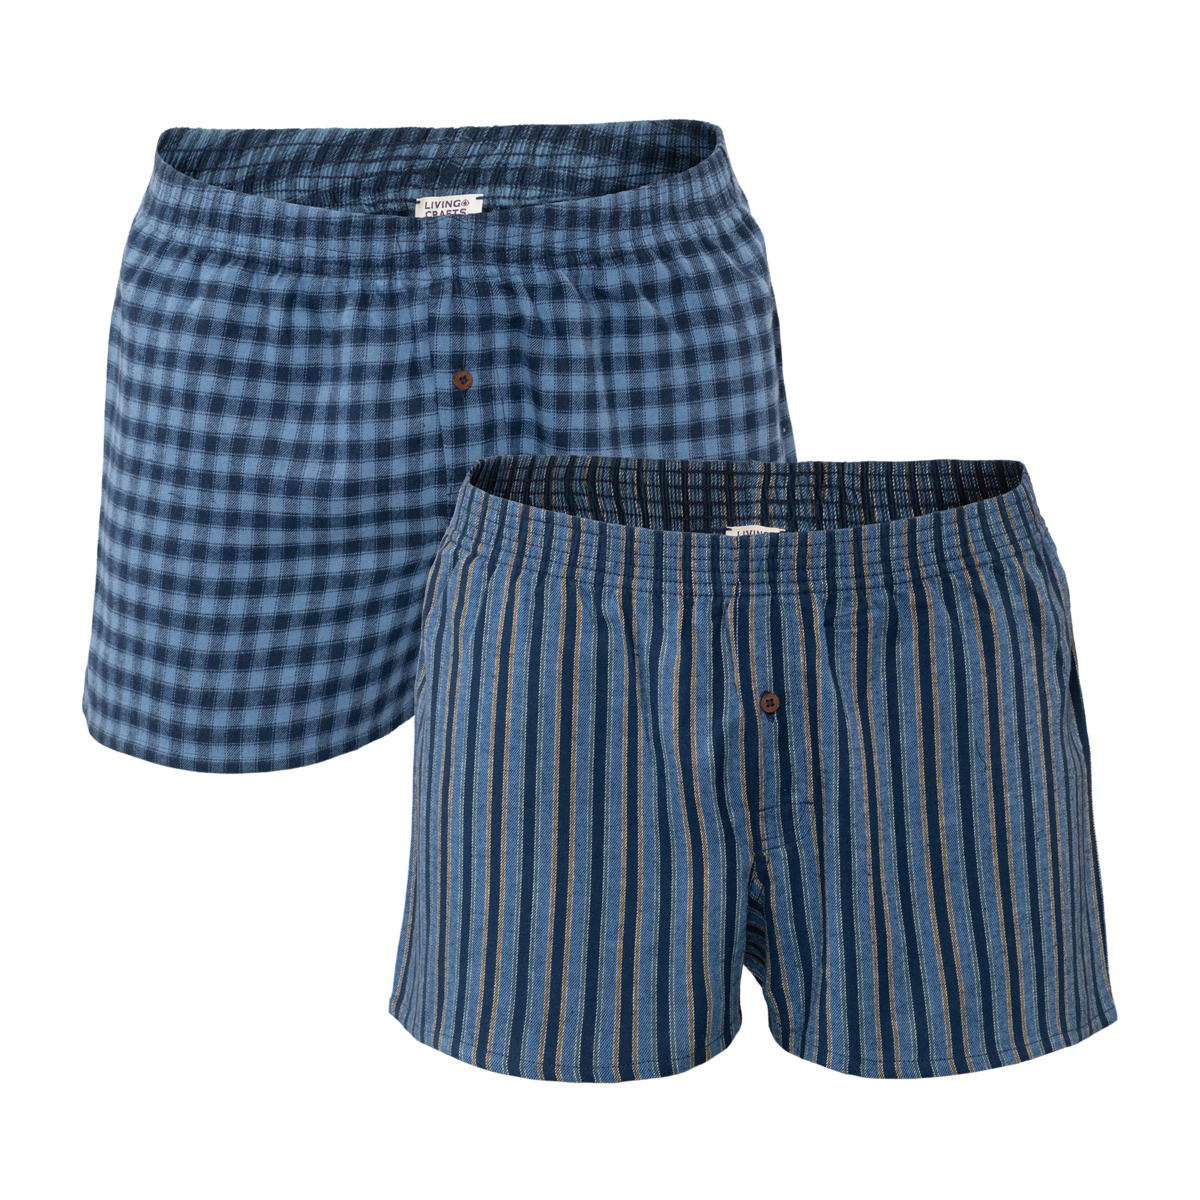 Blue Boxer shorts, pack of 2, BORIS